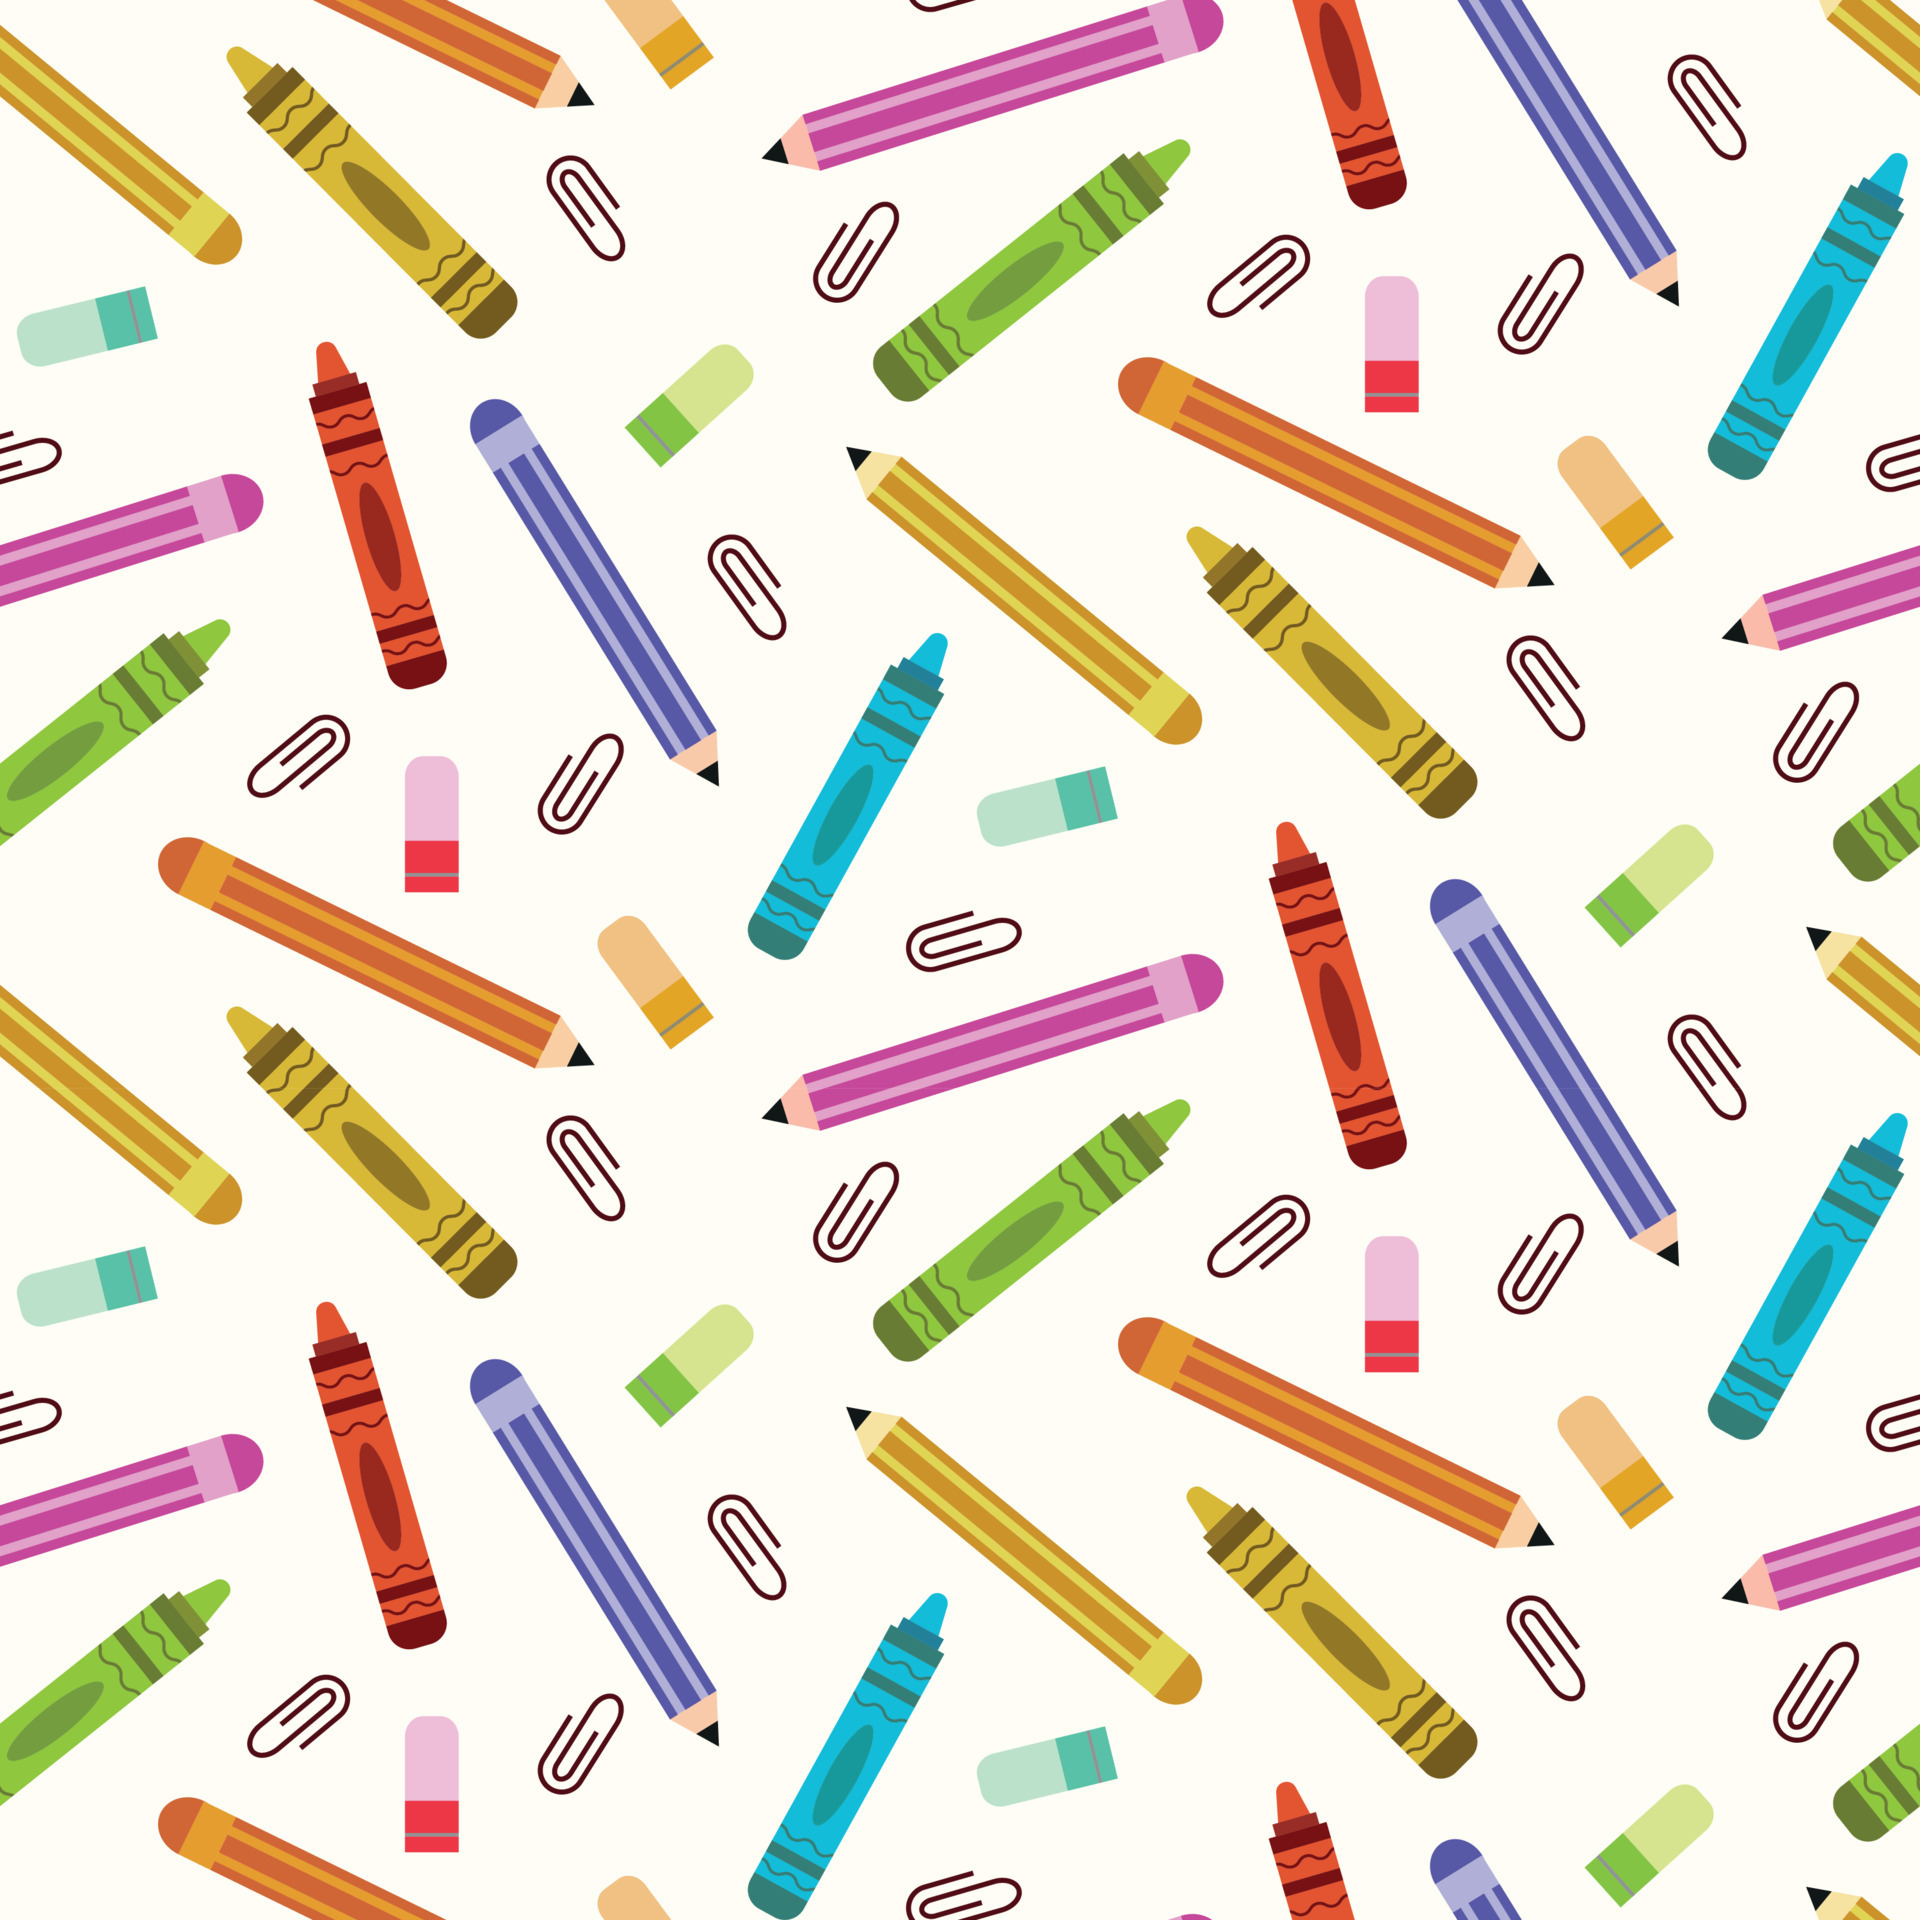 Bút chì màu đầy màu sắc và sinh động sẽ khiến bạn cảm thấy như đang sống trong một thế giới đầy màu sắc. Hãy cùng khám phá những bức tranh đẹp lung linh với những chiếc bút này nhé!